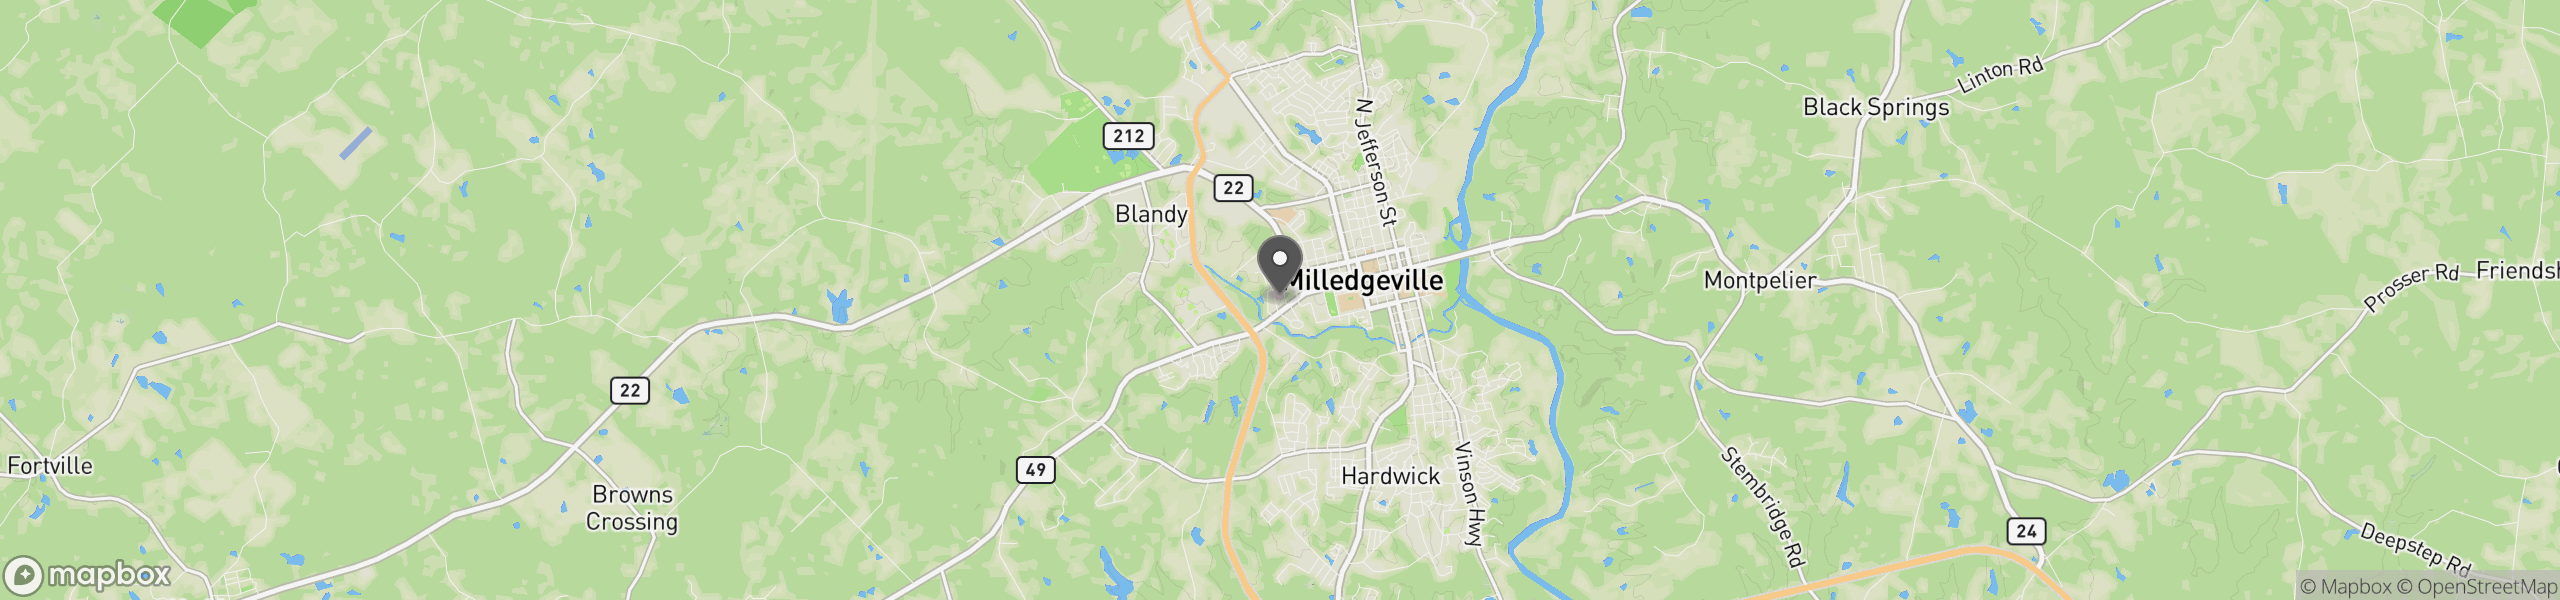 Milledgeville, GA